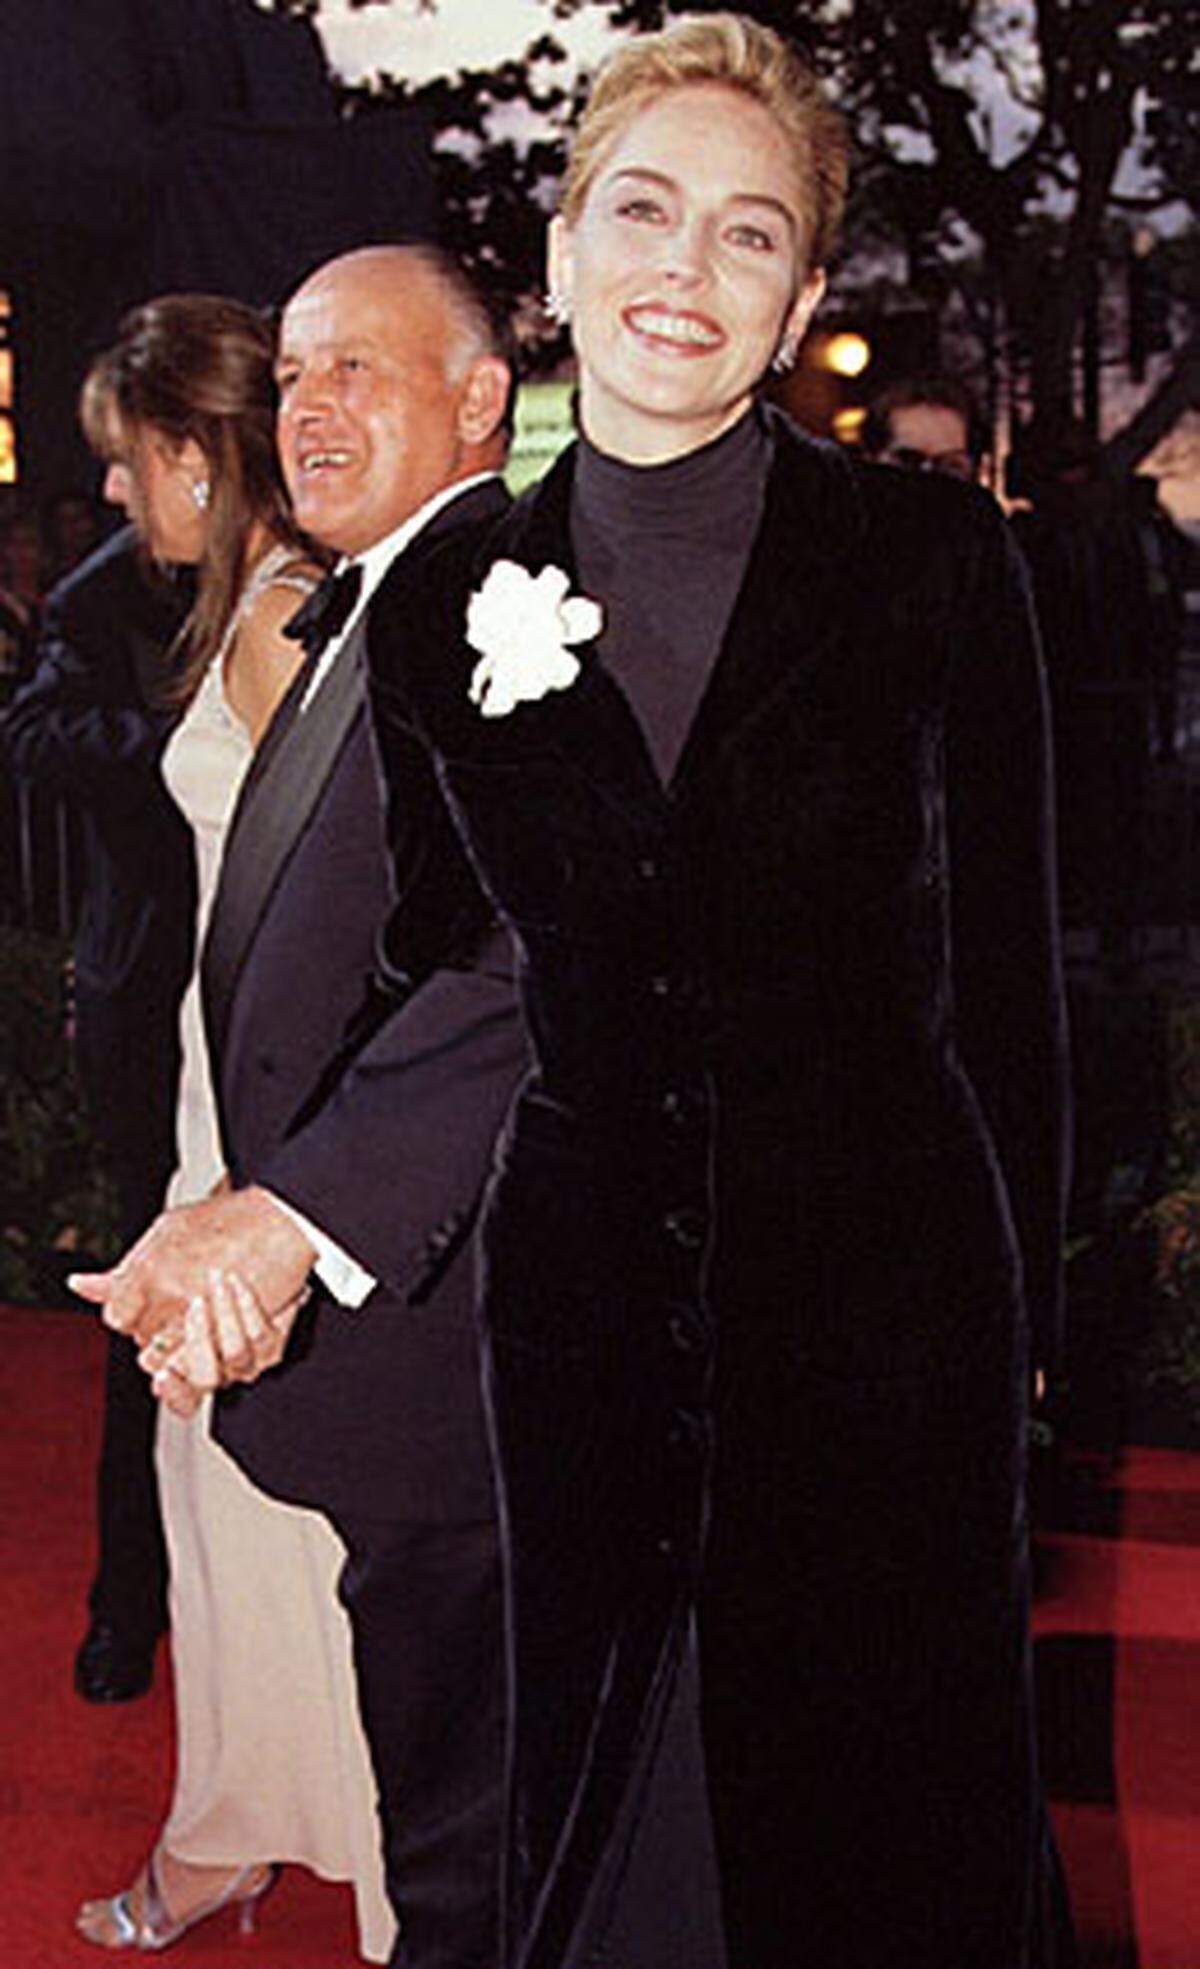 Gar nicht sexy war Sharon Stone 1996. Ein schwarzer Rollkragenpulli mag für Architekten-Partys passen, aber nicht auf dem roten Teppich.